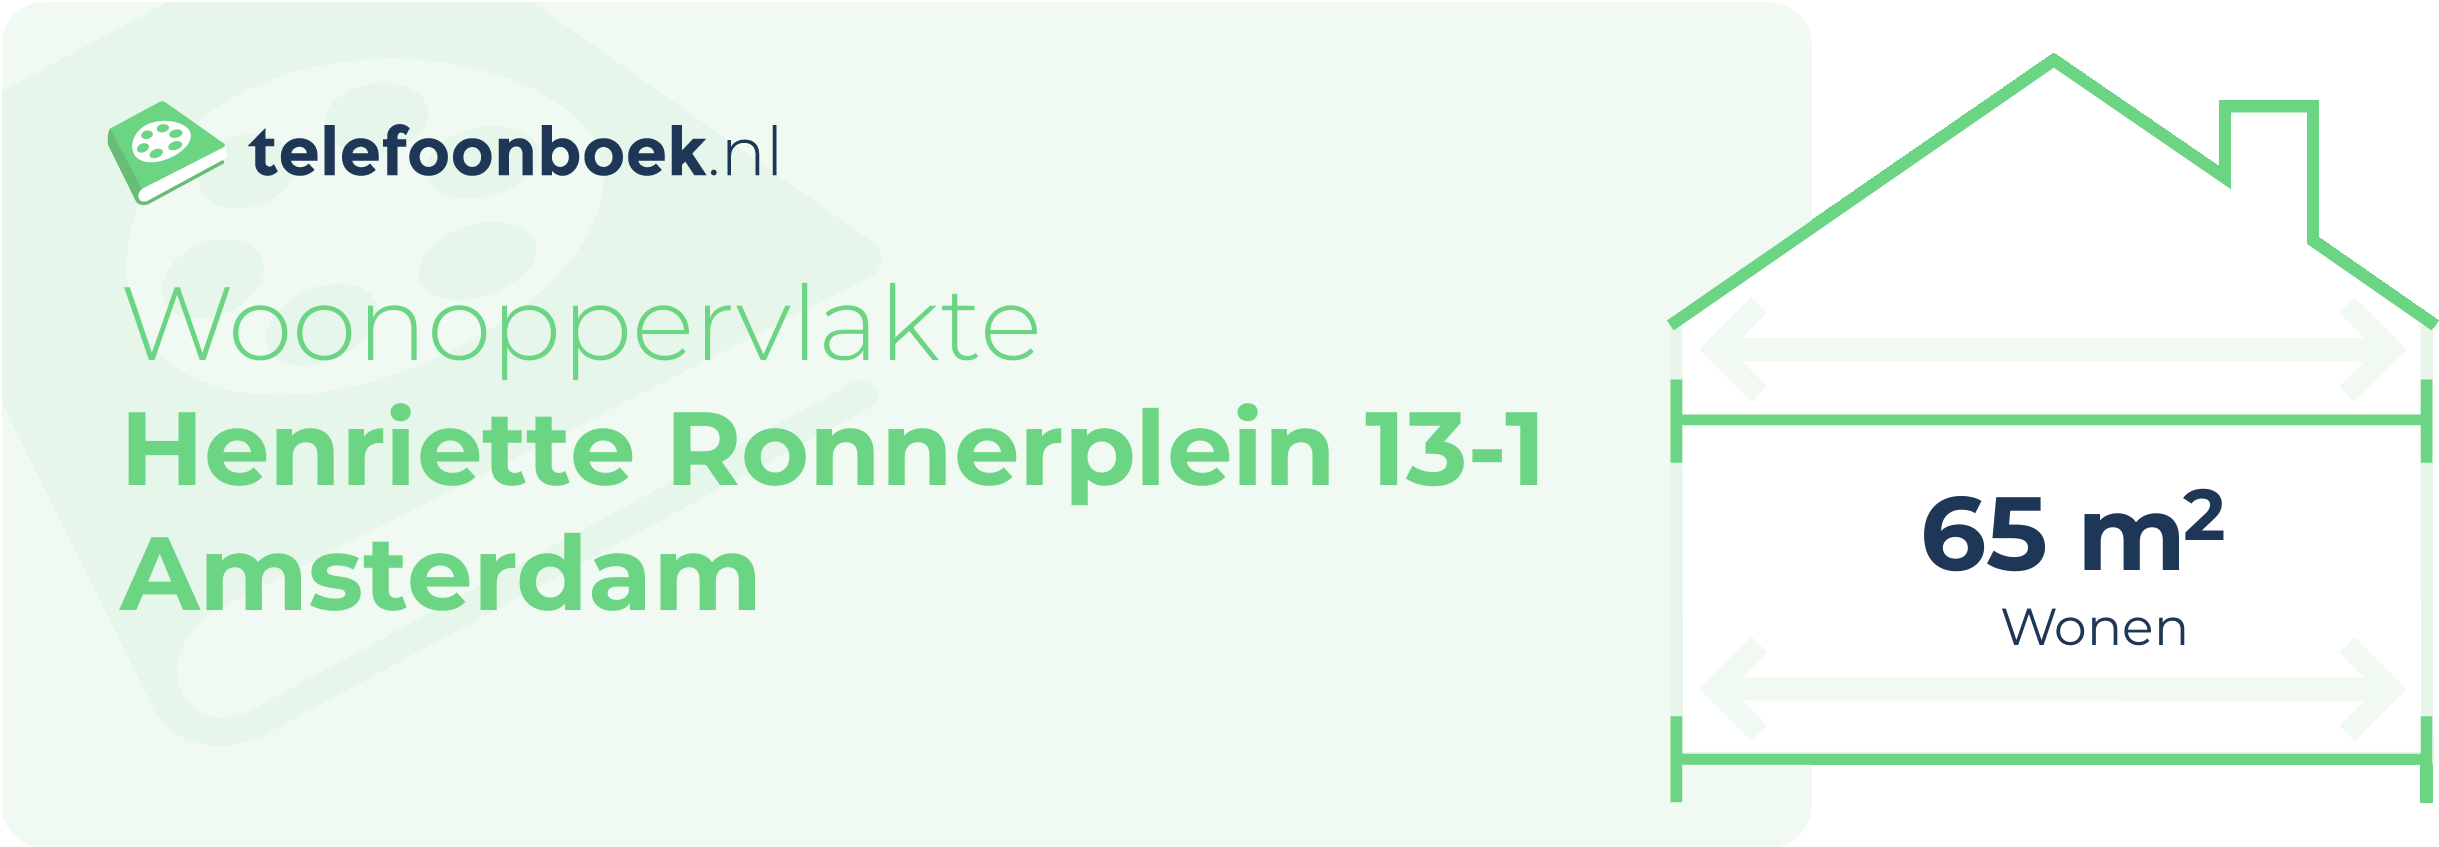 Woonoppervlakte Henriette Ronnerplein 13-1 Amsterdam